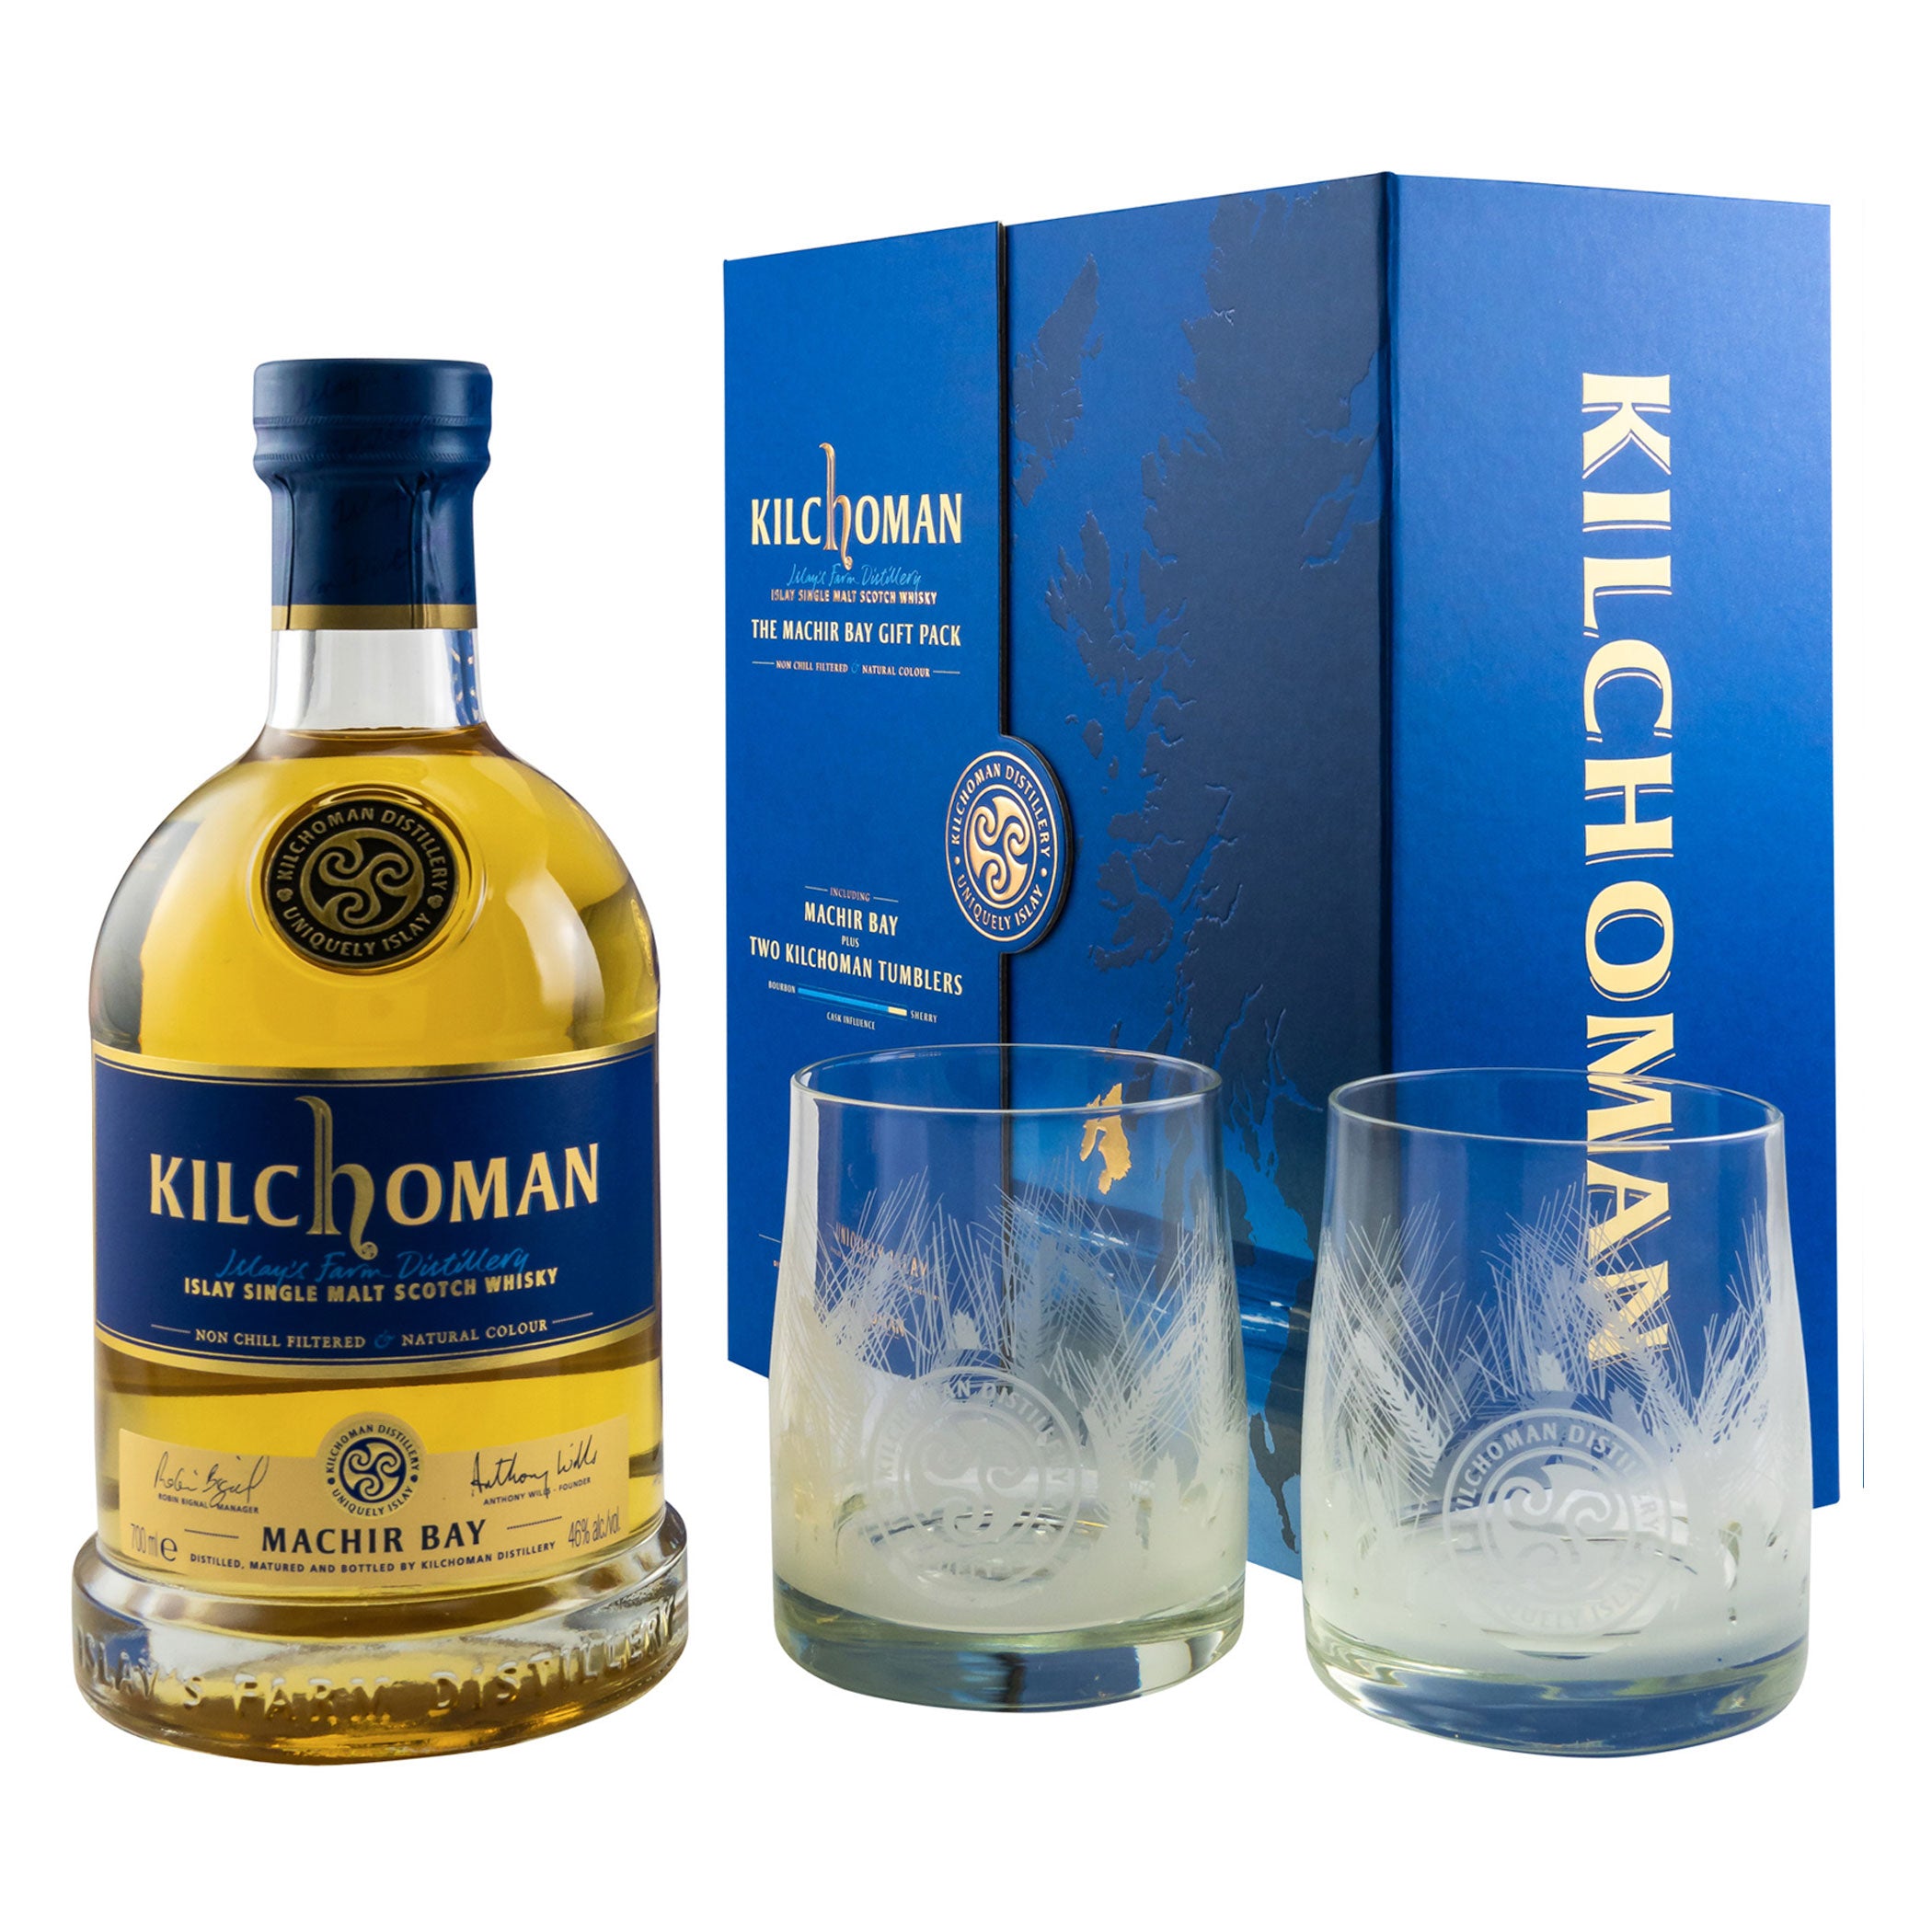 Kilchoman Machir Bay Geschenkset mit 2 Gläser - Islay 46 % Single Malt Whisky Gift Pack